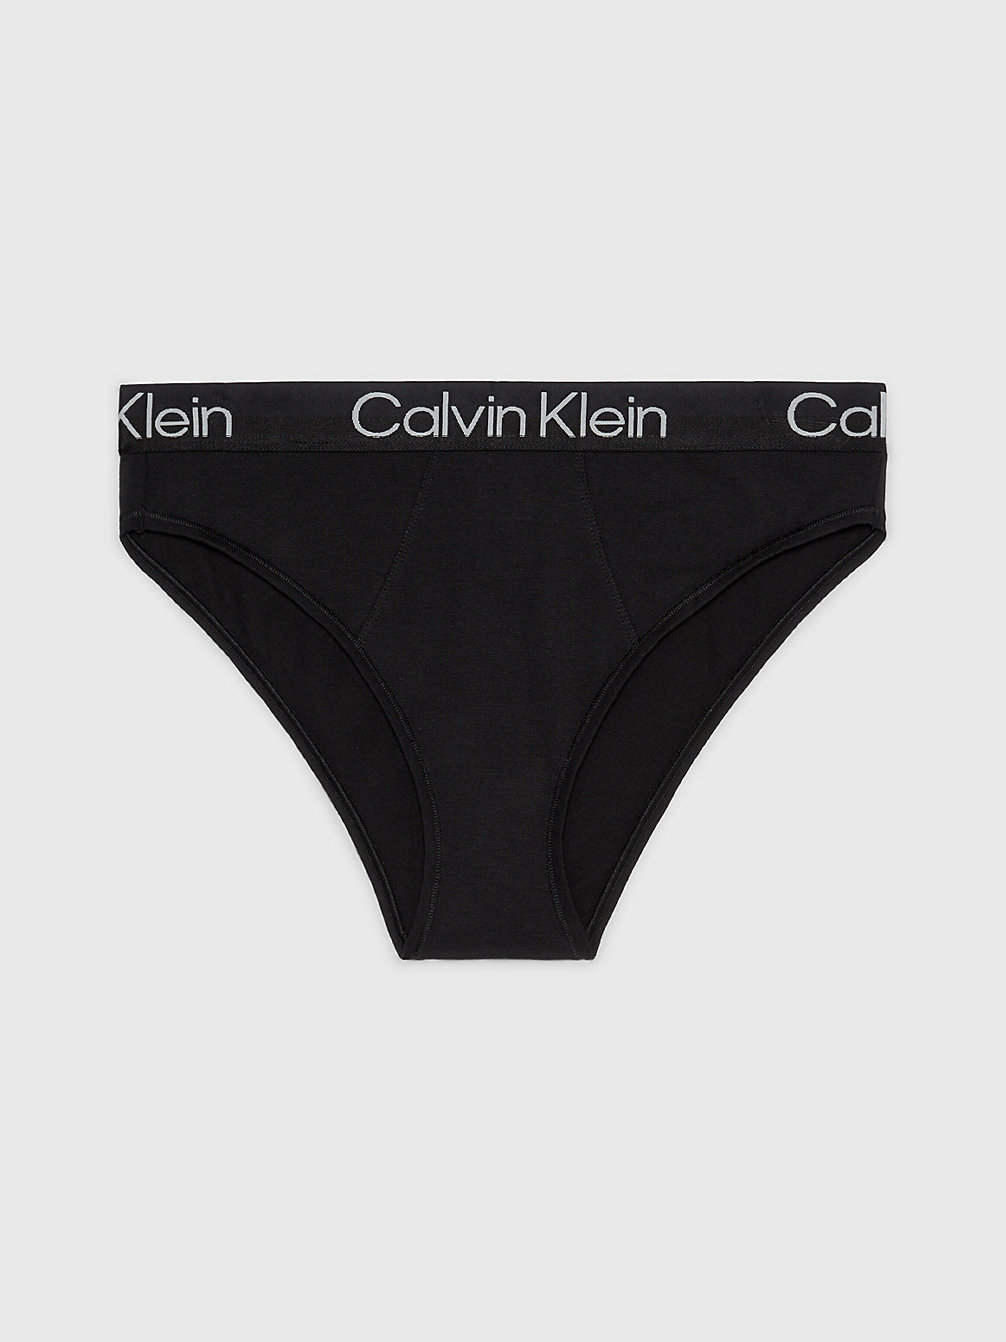 BLACK > Brazyliany Z Wysokimi Nogawkami - Modern Structure > undefined Kobiety - Calvin Klein